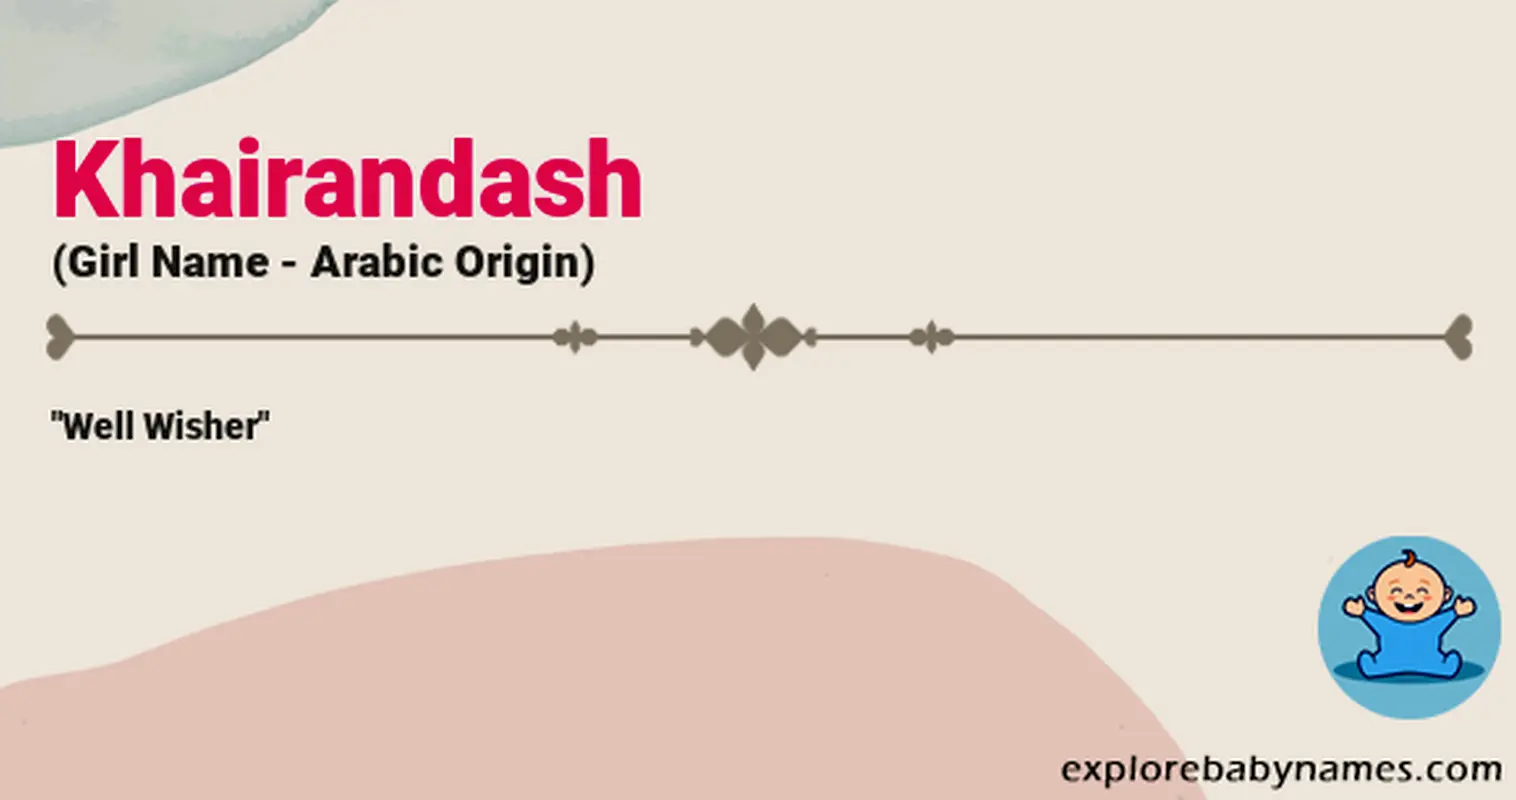 Meaning of Khairandash